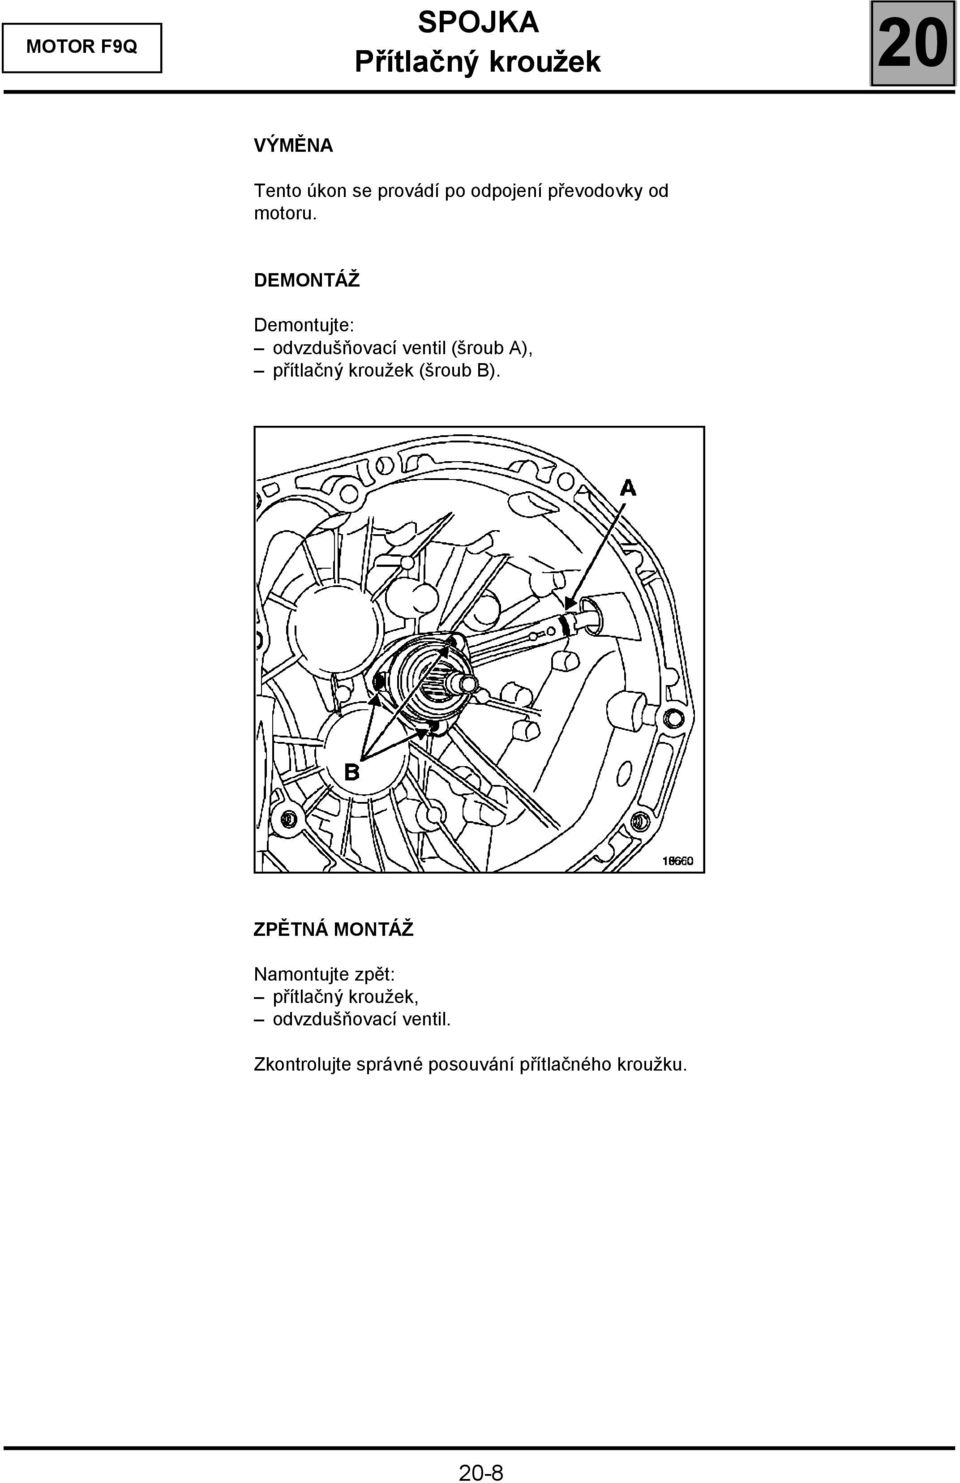 DEMONTÁŽ Demontujte: odvzdušňovací ventil (šroub A), přítlačný kroužek (šroub